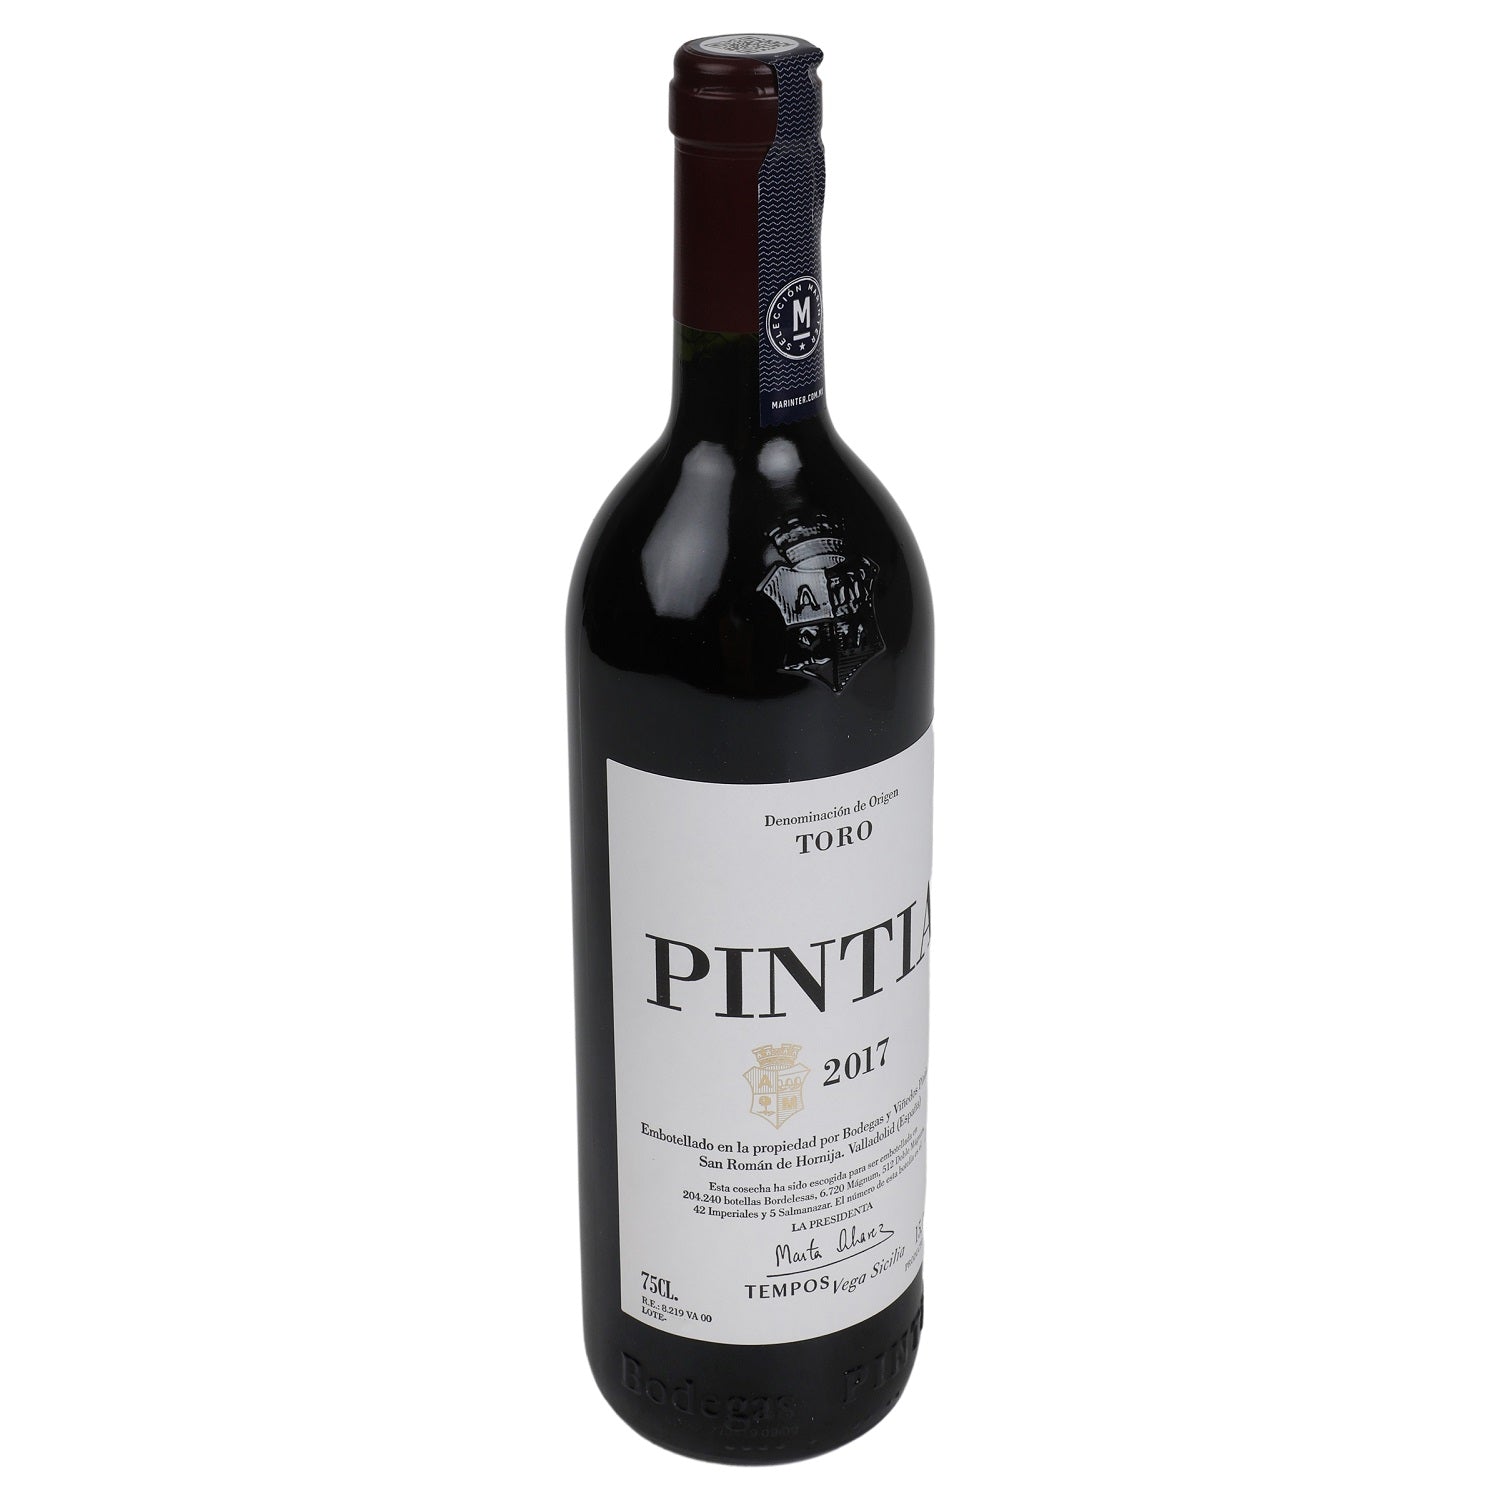 Vino Tinto - Pintia 2018 - 1500 ml - España